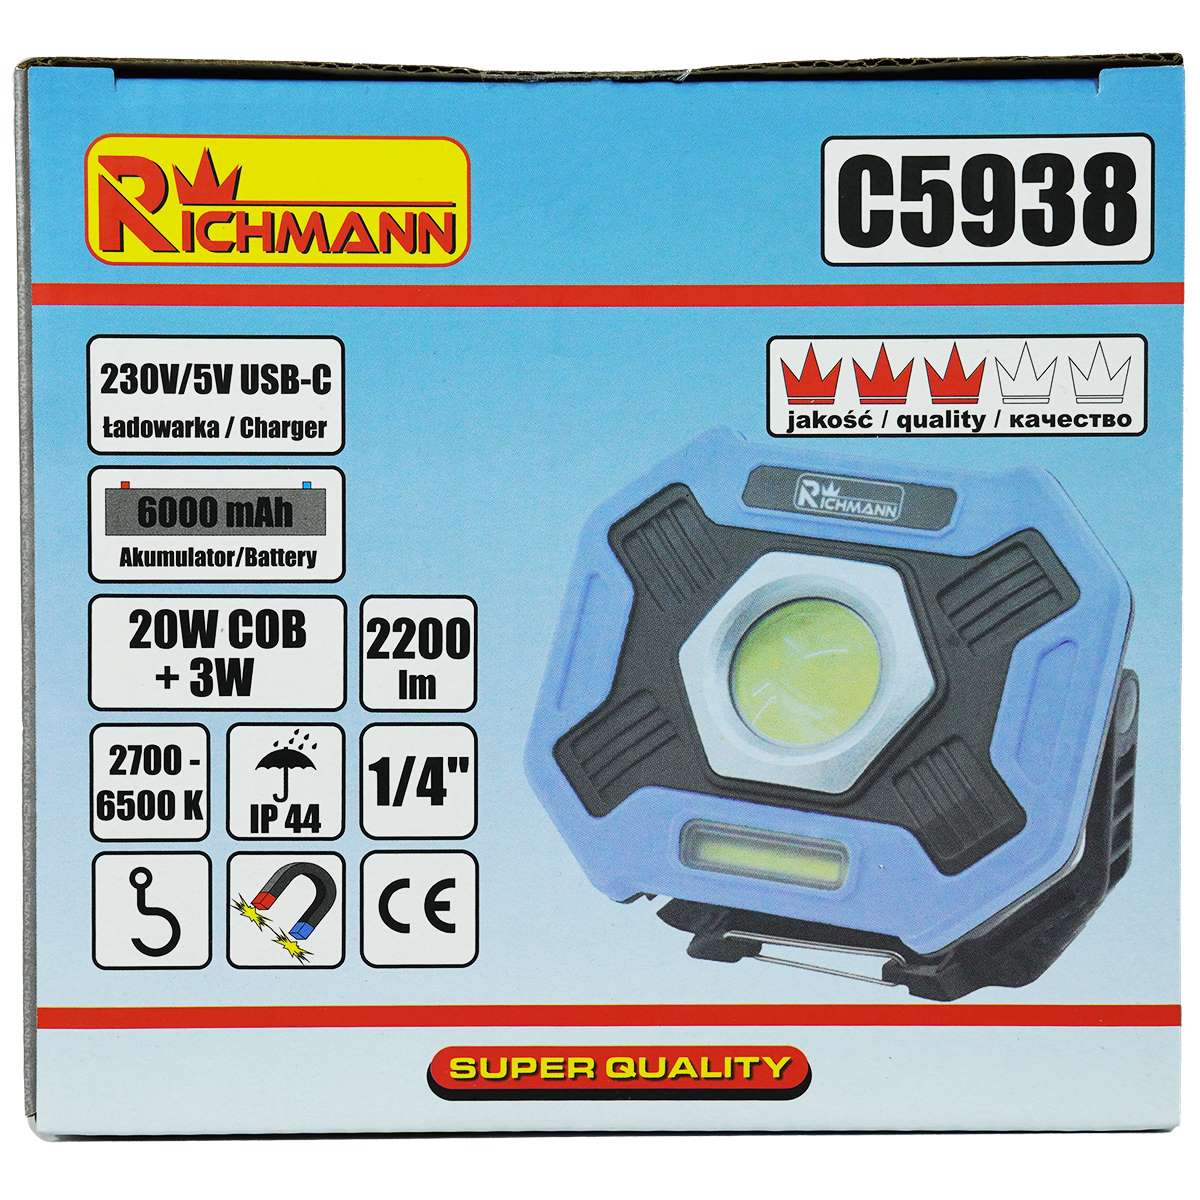 Lampada alogena led ricabile 20W + 3W 2200lm Richmann C5938 - Cod. C5938 -  ToolShop Italia